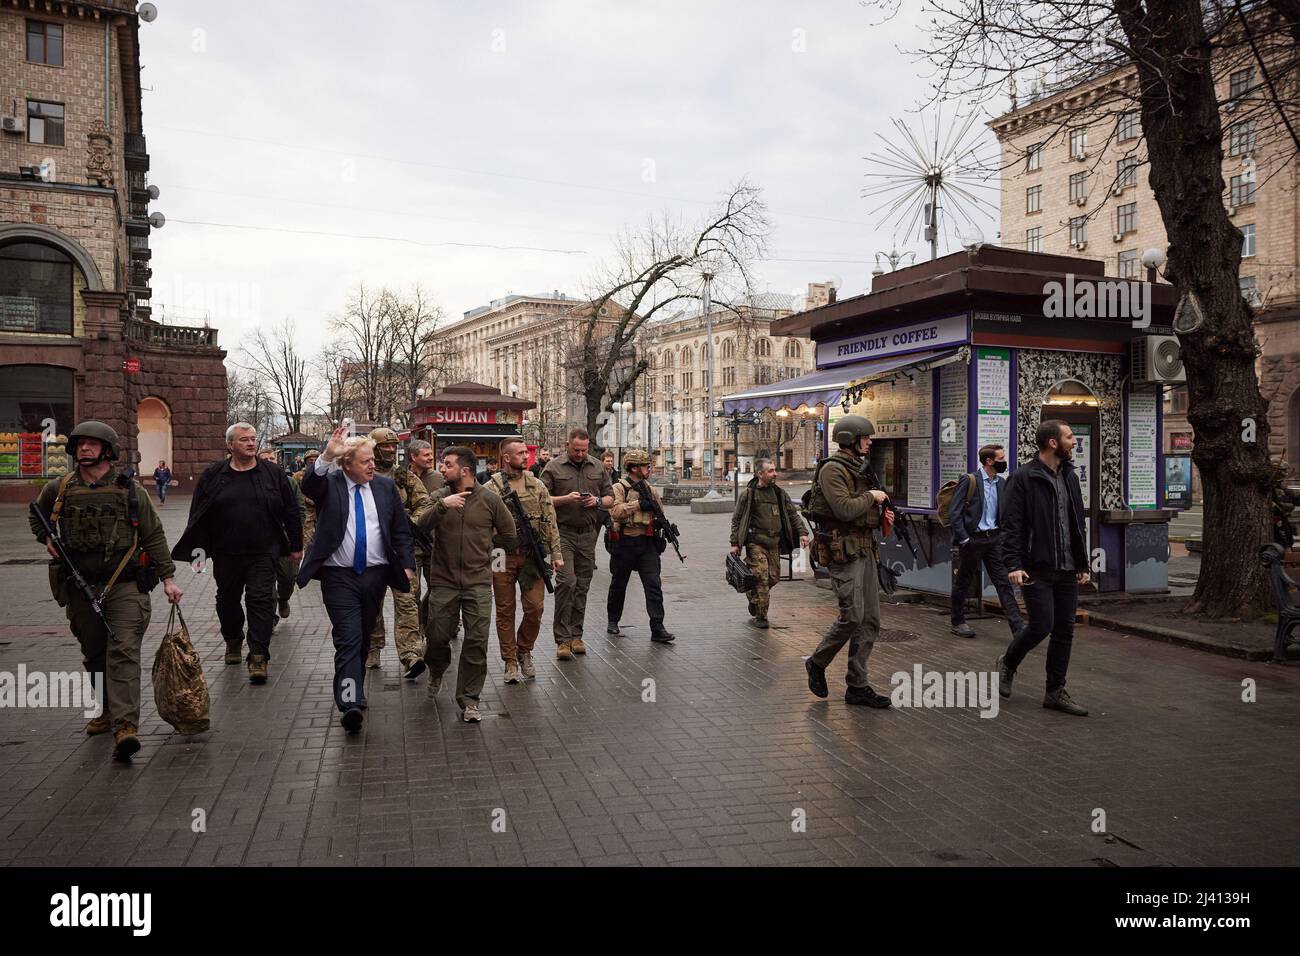 KIEW, UKRAINE - 09. April 2022 - der britische Premierminister Boris Johnson trifft den ukrainischen Präsidenten Wolodymyr Zelensky während eines Überraschungsbesuchs im Krieg Stockfoto